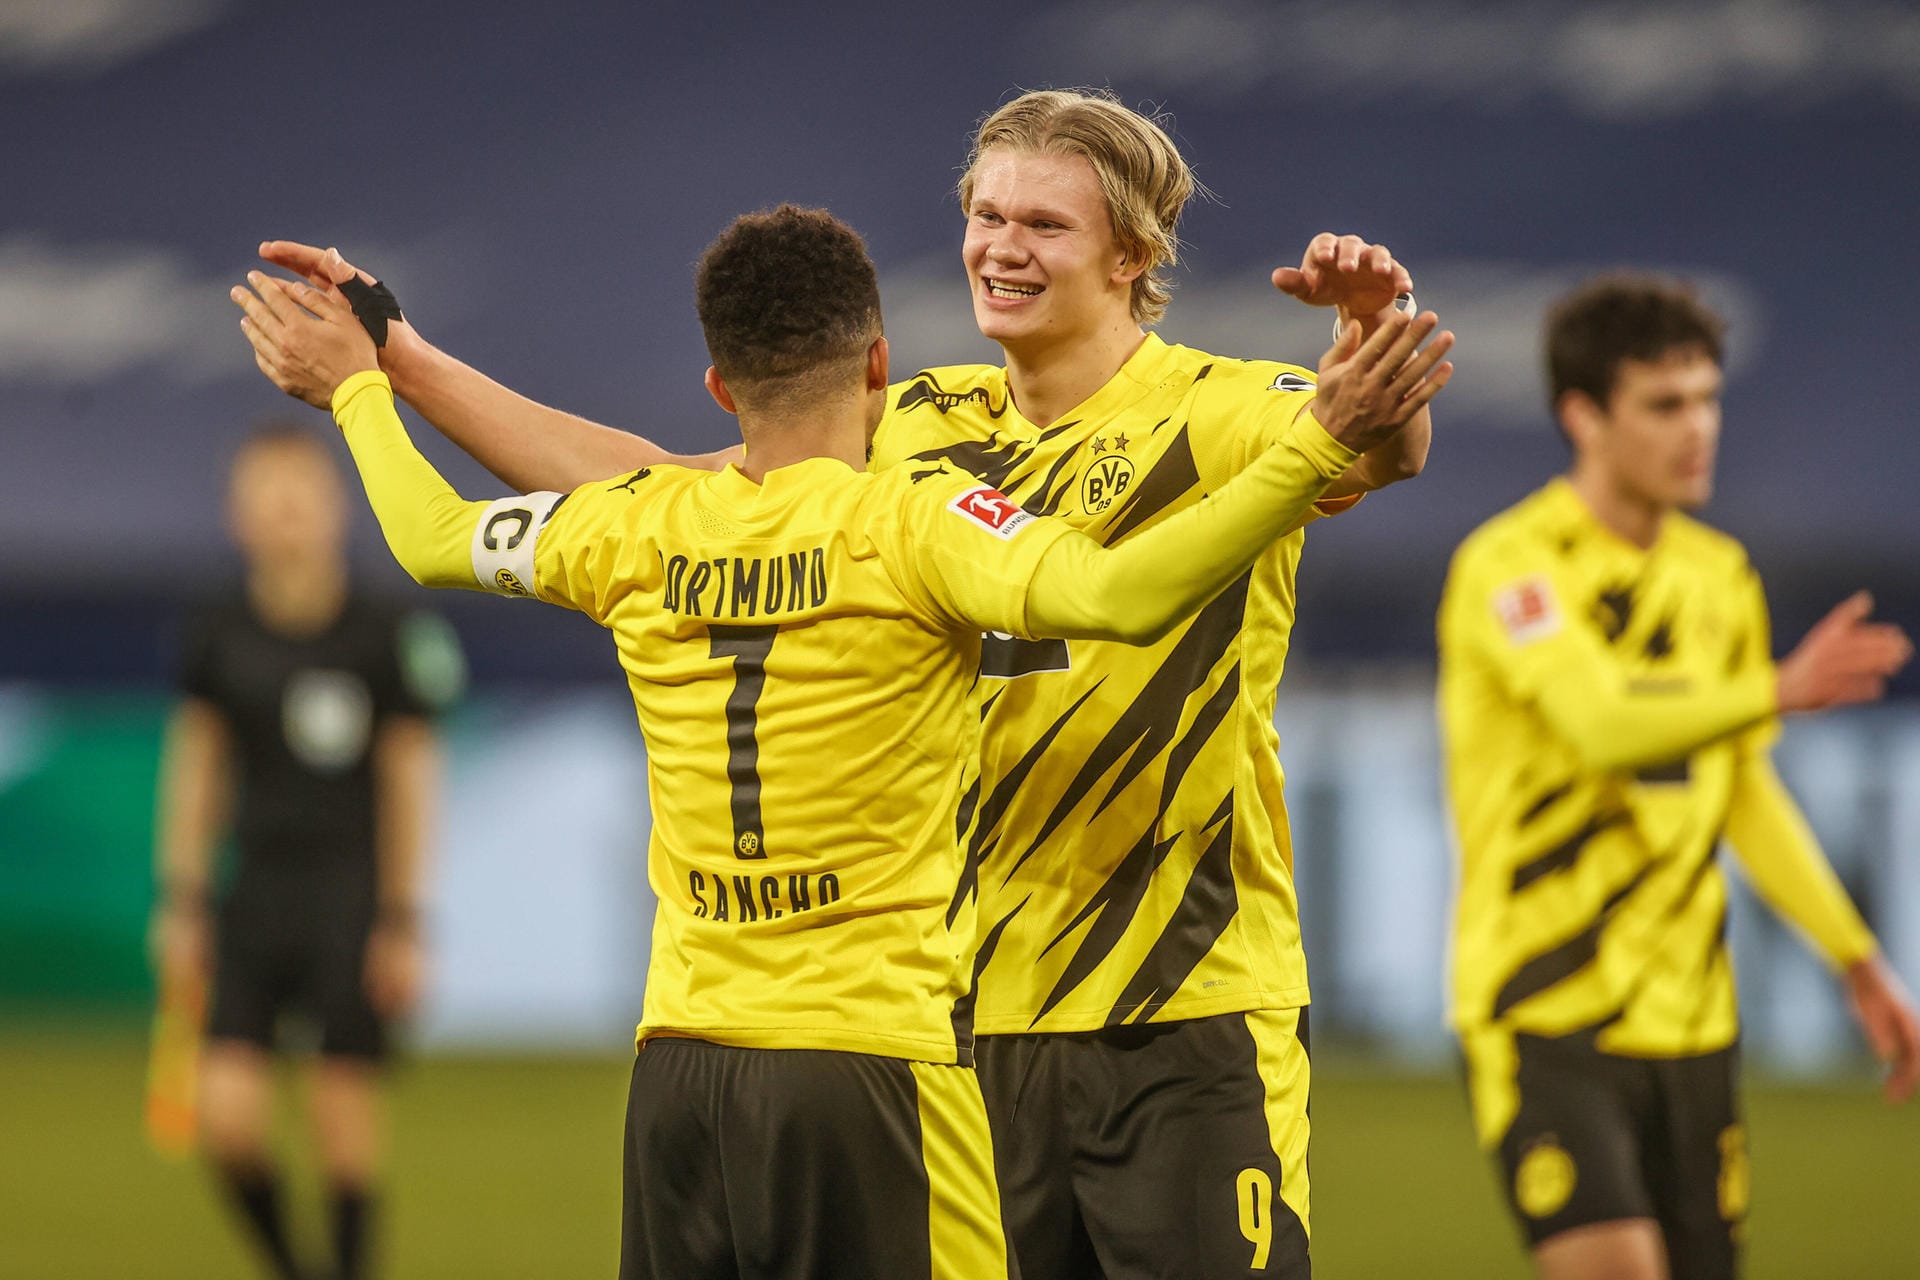 4:0 im Revierderby. Borussia Dortmund demontiert den FC Schalke 04. Dabei können sich gleich mehrere BVB-Stars auszeichnen – aber einer blieb unter seinen Möglichkeiten. Die Einzelkritik.